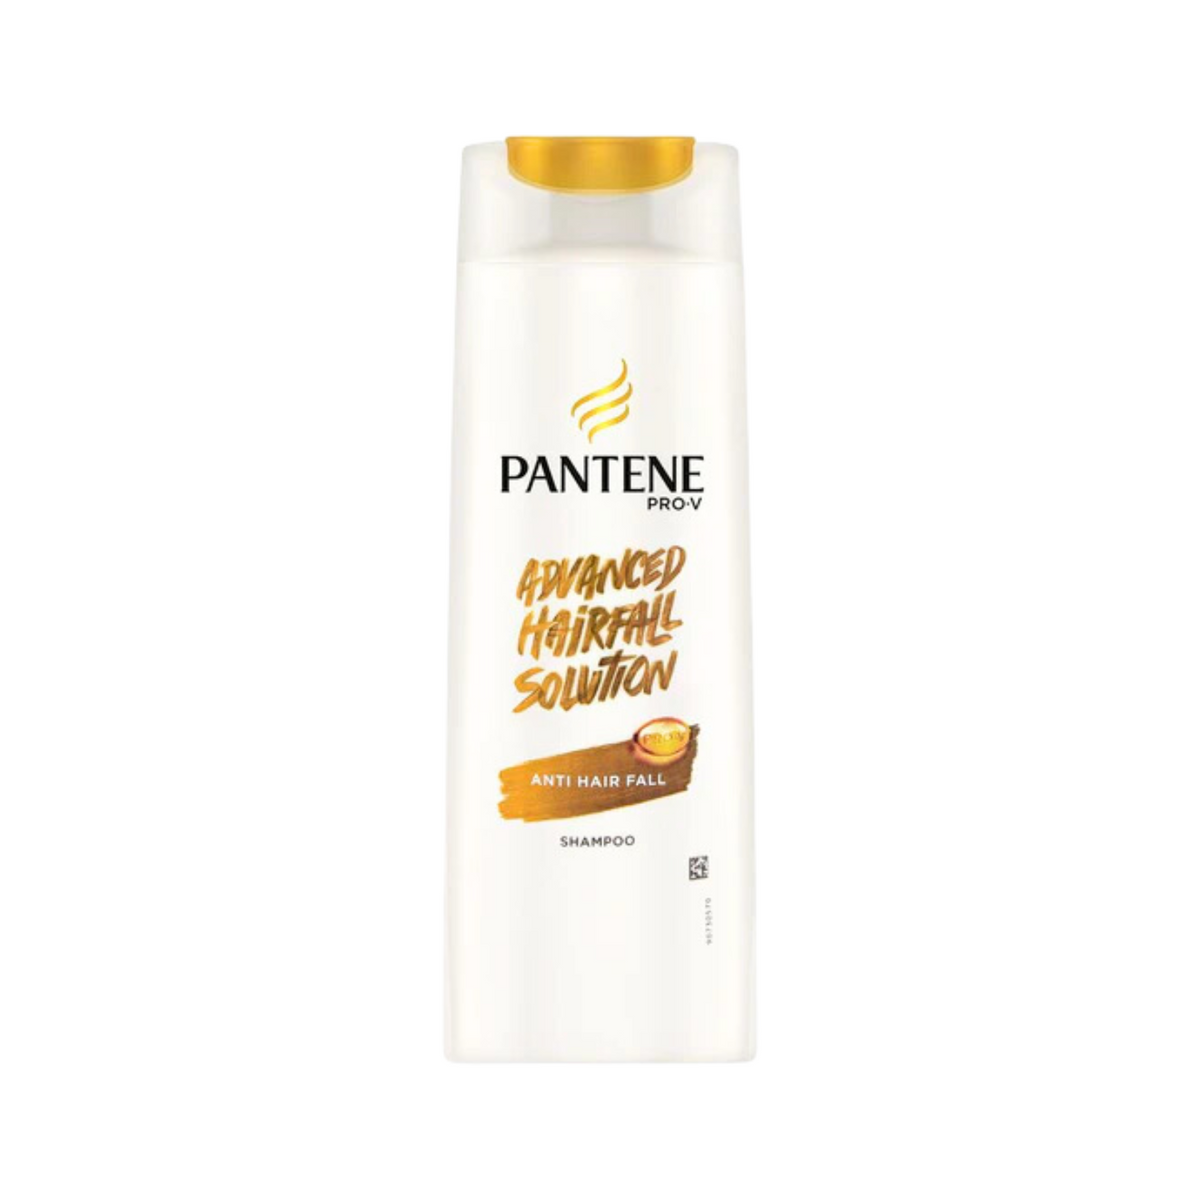 pantene-advanced-hair-fall-solution-anti-hair-fall-shampoo-185ml